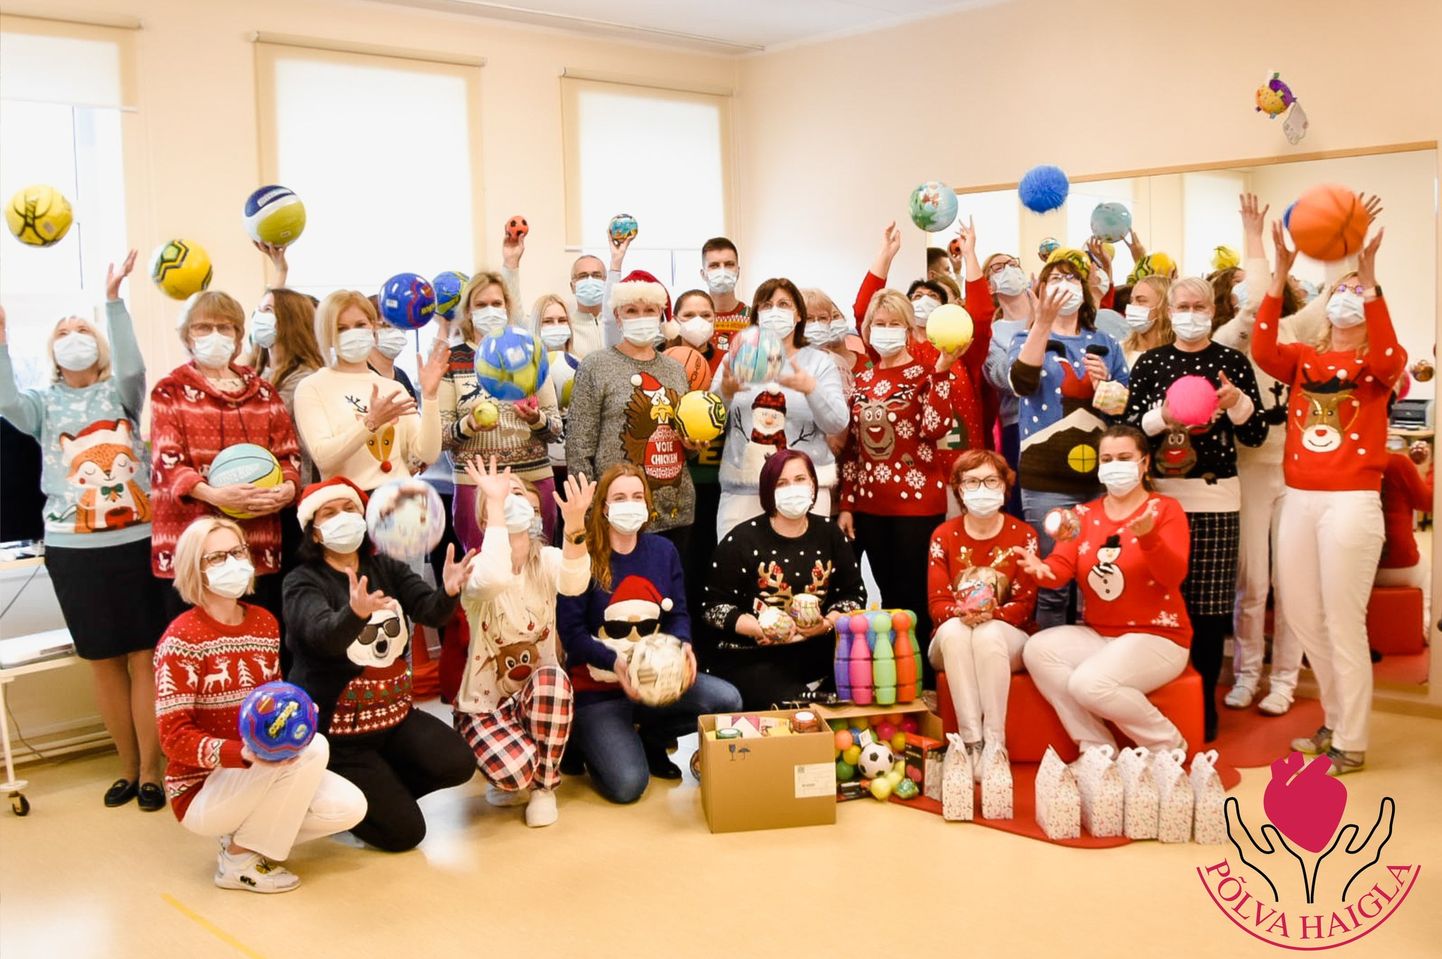 Põlva haigla töötajad eilsel jõulukampsuni päeval.